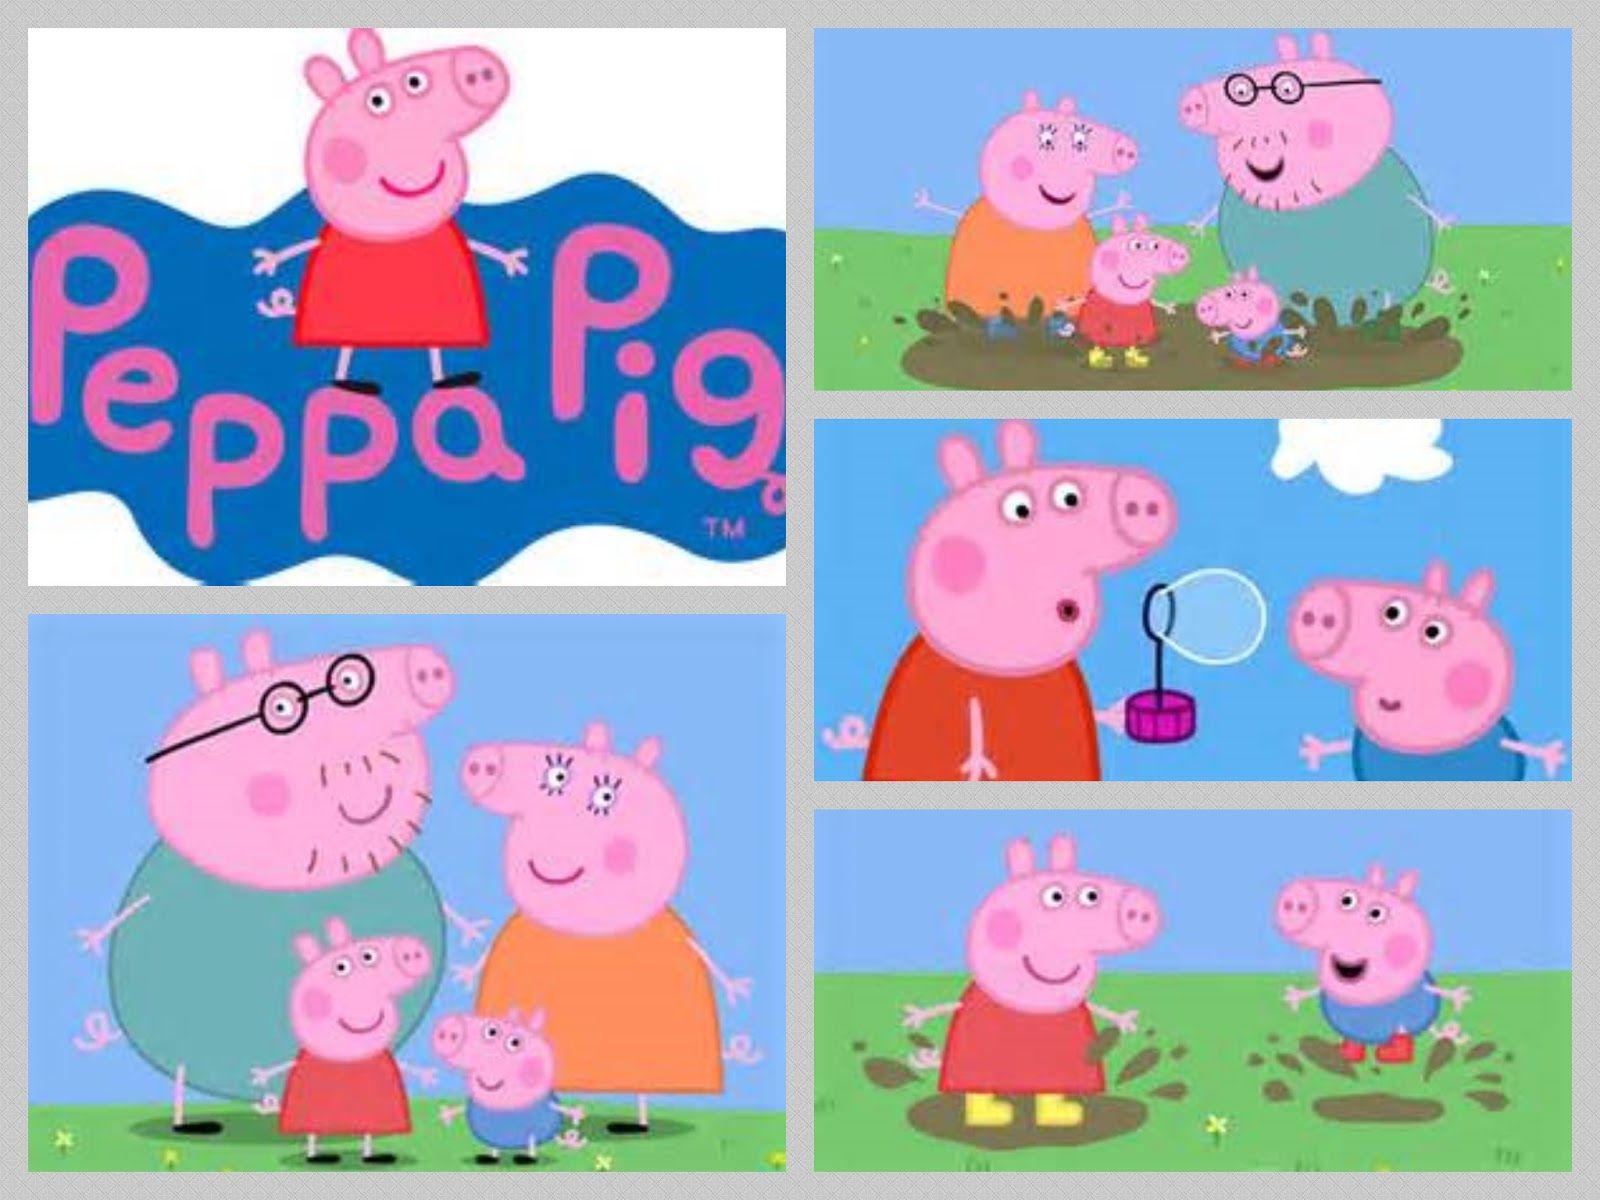 george peppa pig | love hot wallpapers